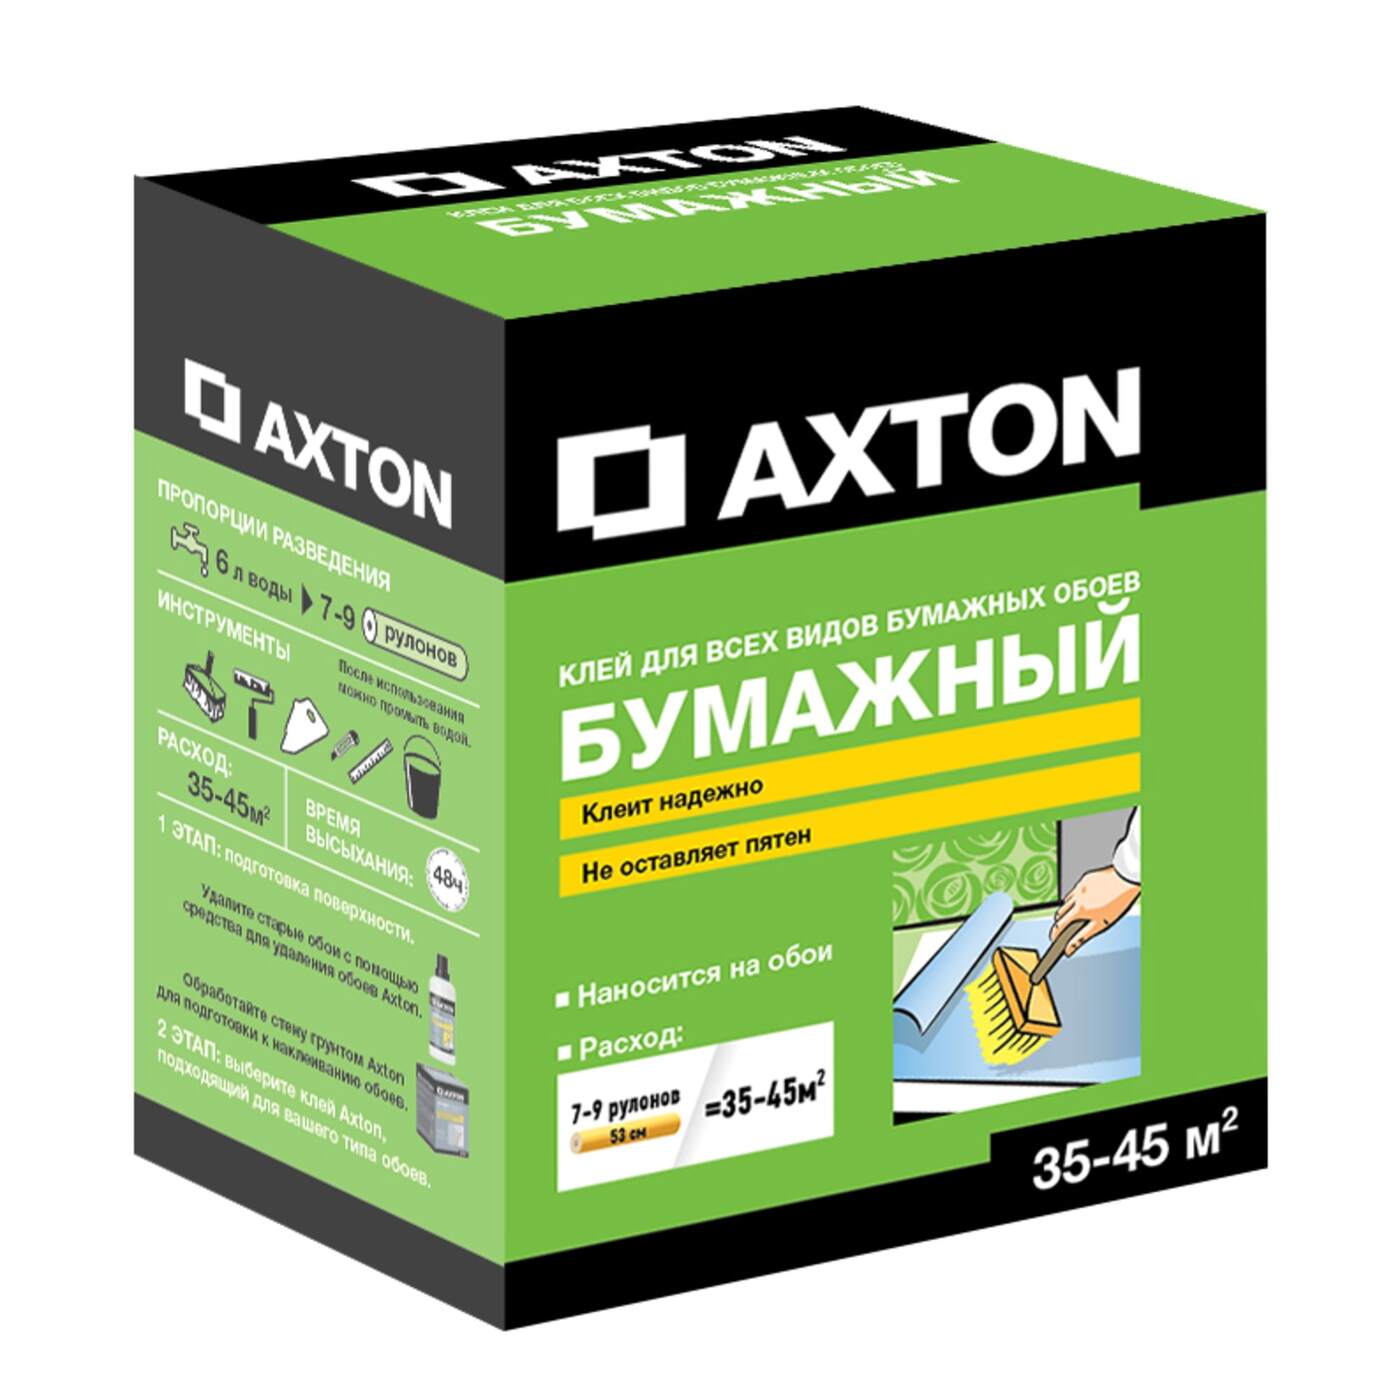 Мерлен клей для обоев. Клей для бумажных обоев Axton 35-45 м². Axton клей обойный. Клей для бумажных обоев Axton. Леруа Мерлен клей Axton.